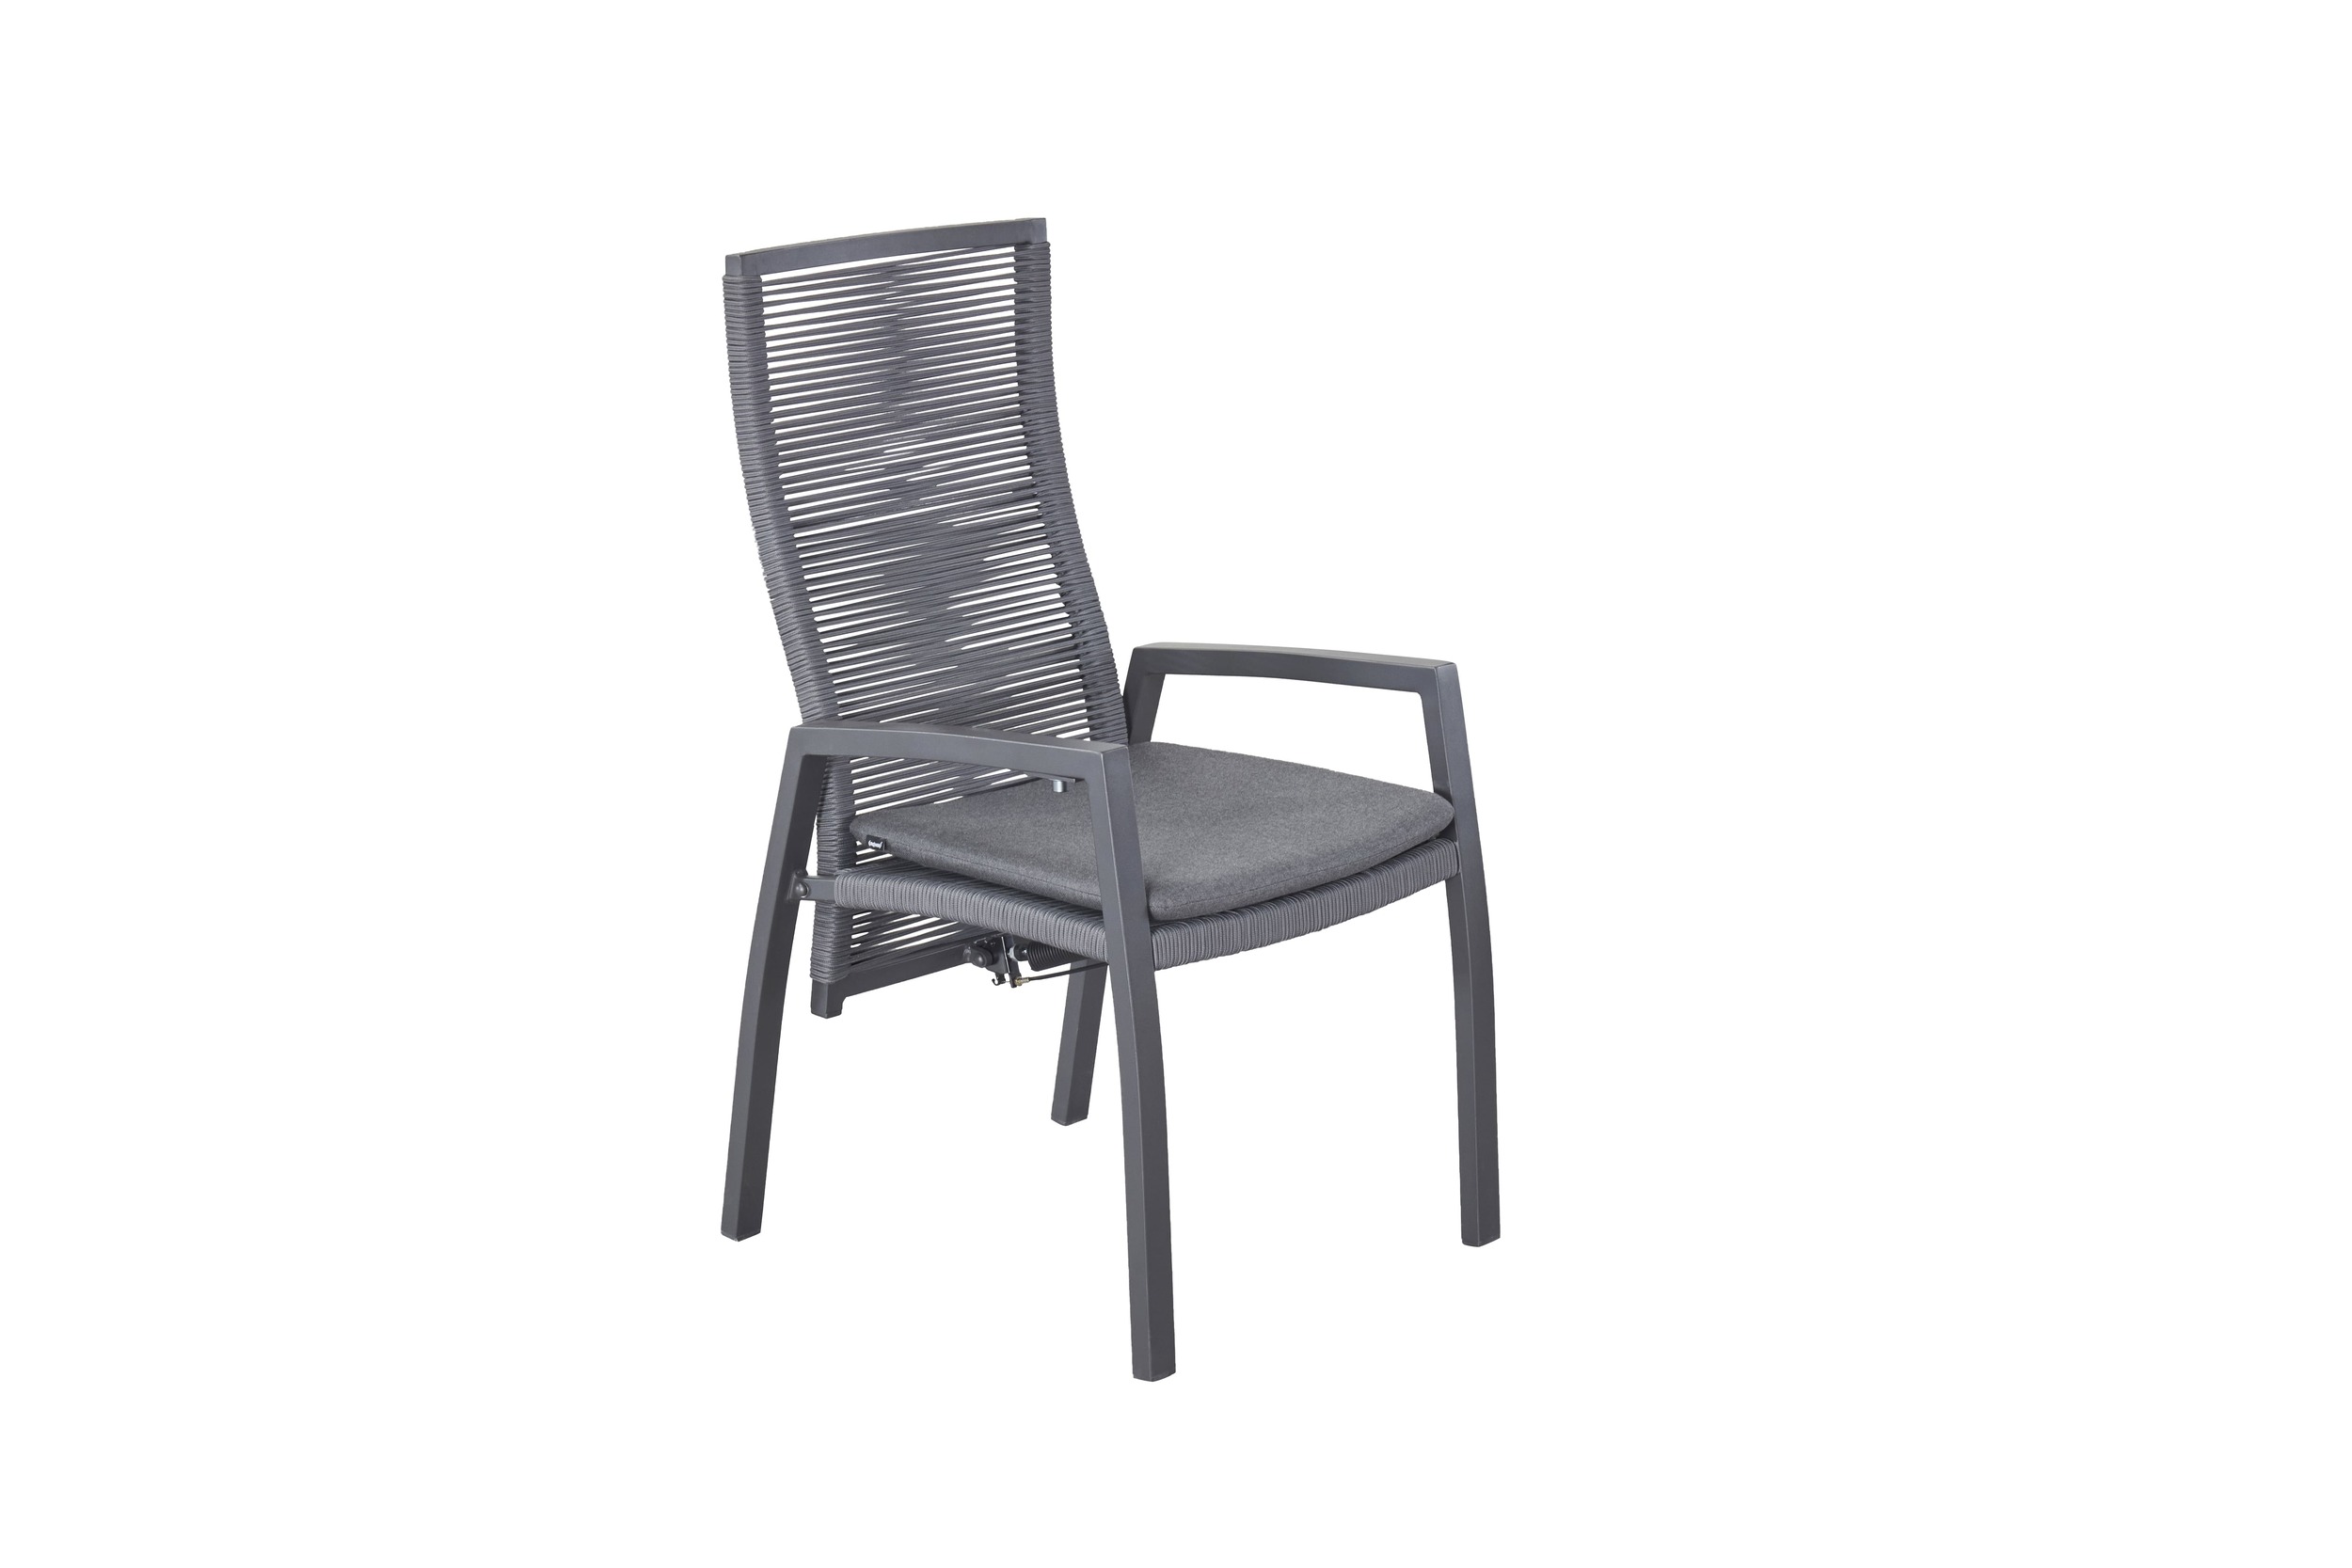 LC Garden »Diwo« Gartenstuhl anthrazit/grau Aluminium/Rope Positionsstuhl mit Sitzkissen aus Sunbrella® Stoff